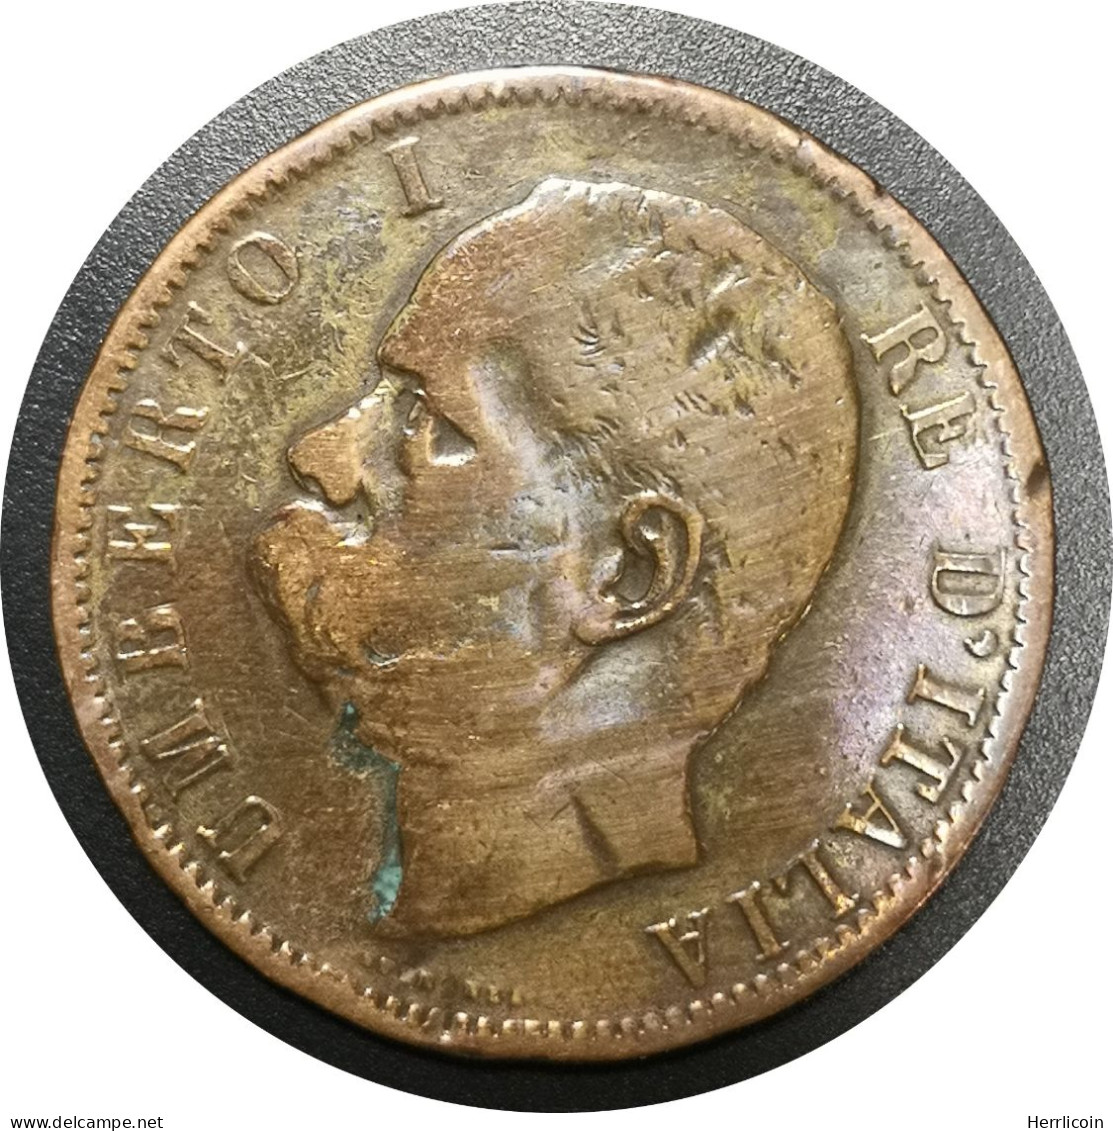 Monnaie Italie - 1894 "BI" - 10 Centesimi Umberto Ier - 1878-1900 : Umberto I